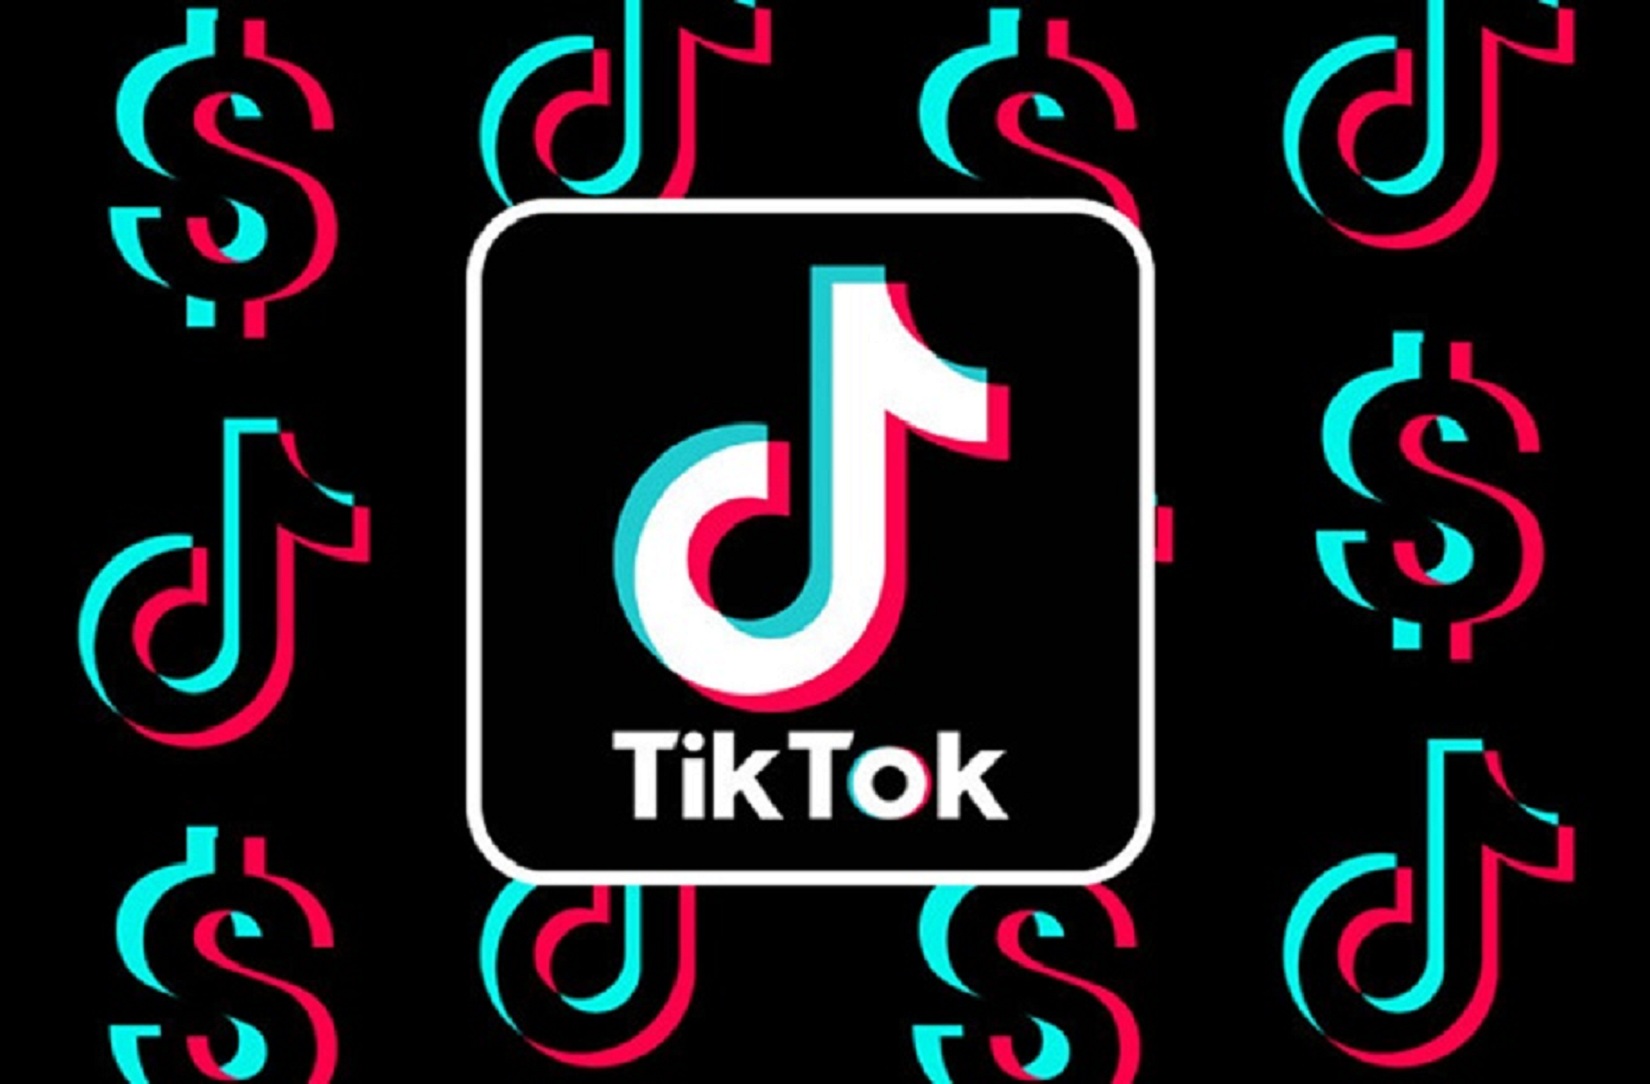 أين أدخل رمز الدعوة في تيك توك Tiktok